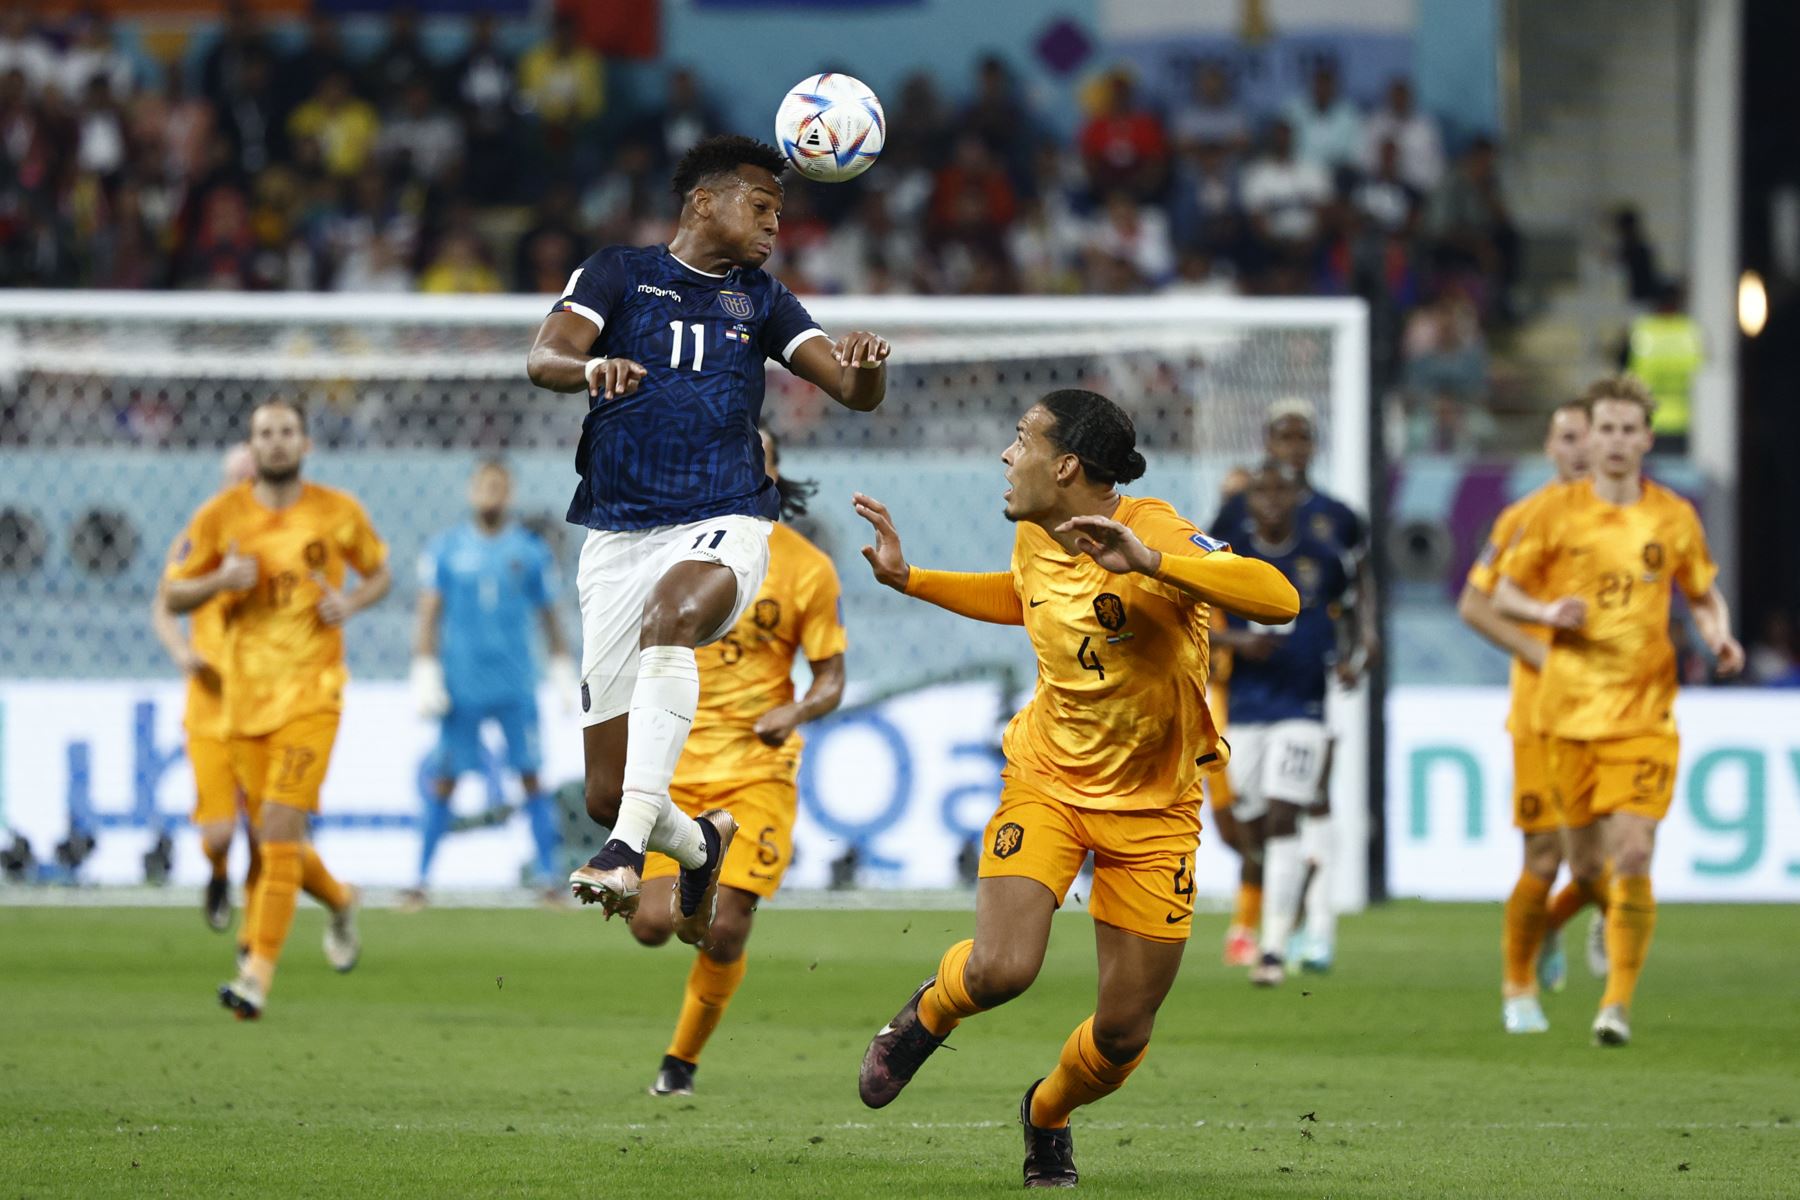 Virgil Van Dijk de Países Bajos disputa un balón con Michael Estrada de Ecuador, en un partido de la fase de grupos del Mundial de Fútbol Qatar 2022. Foto: EFE